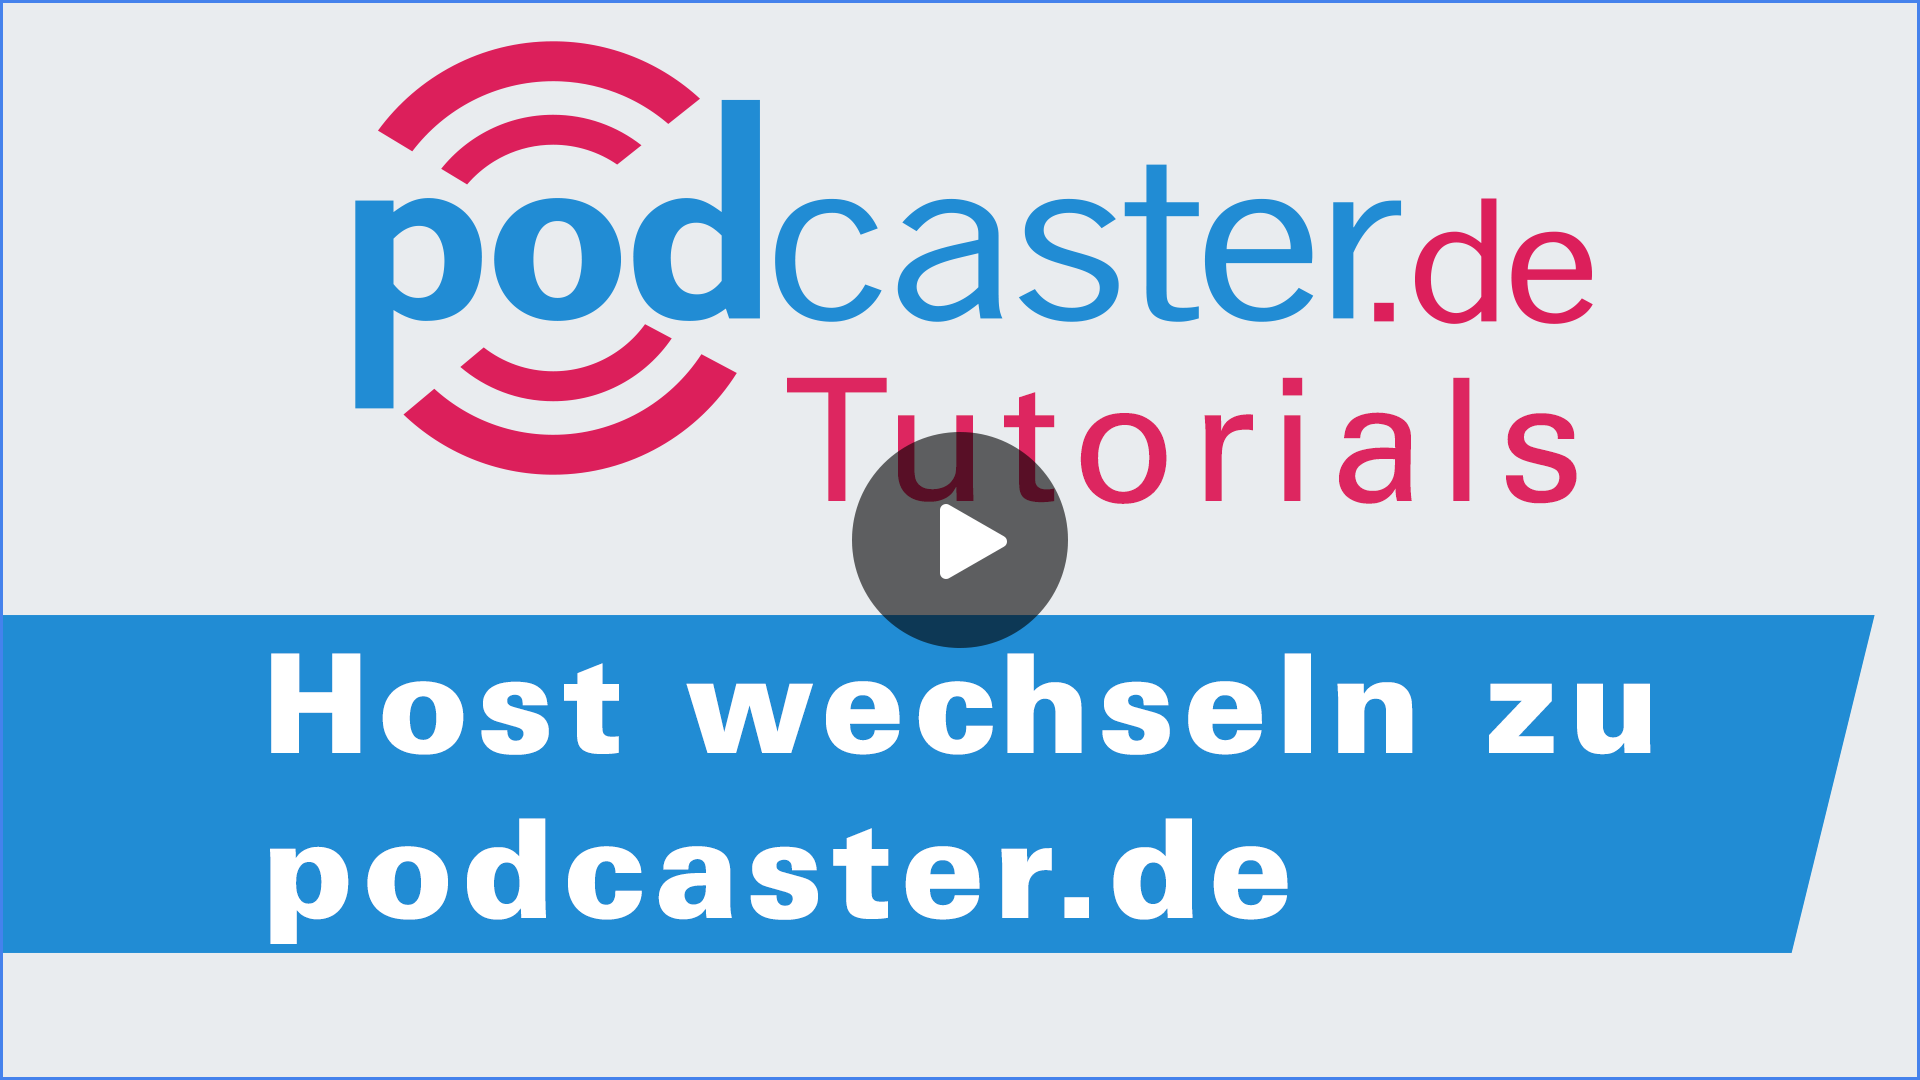 Host wechseln zu podcaster.de